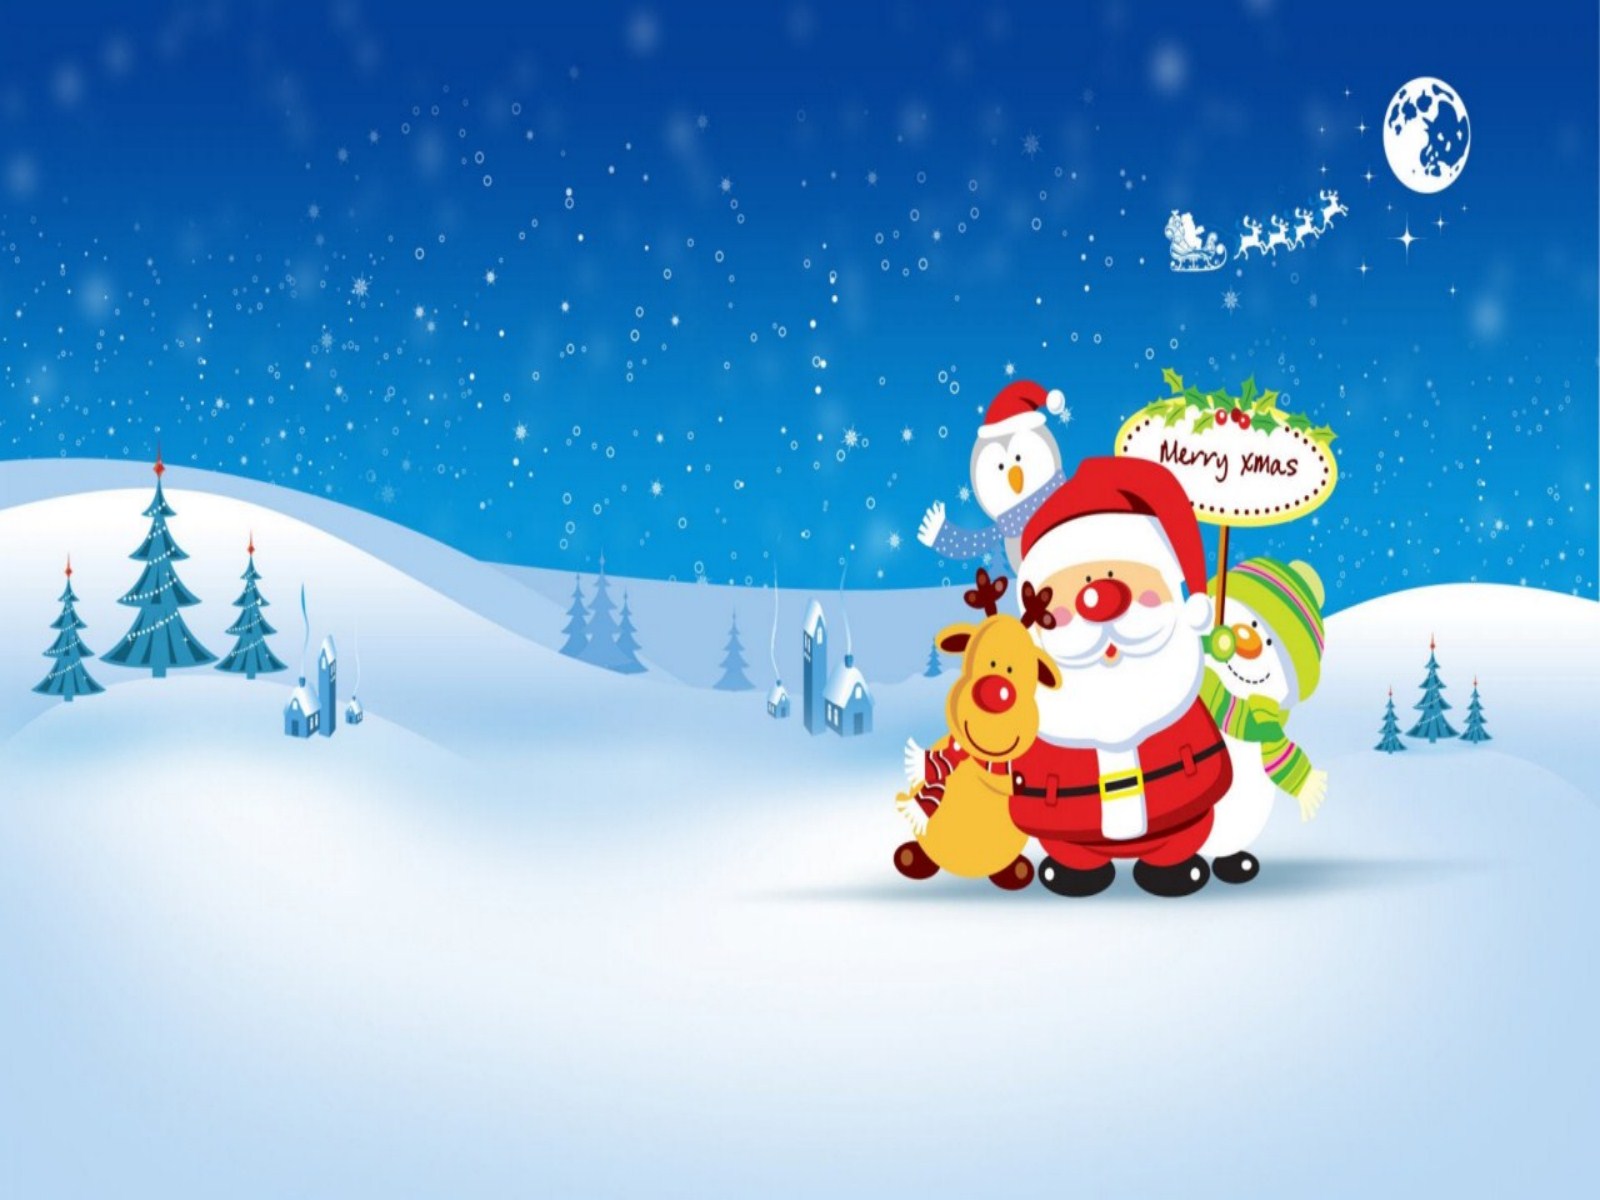 lustige weihnachtstapete,weihnachtsmann,karikatur,erfundener charakter,heiligabend,weihnachten